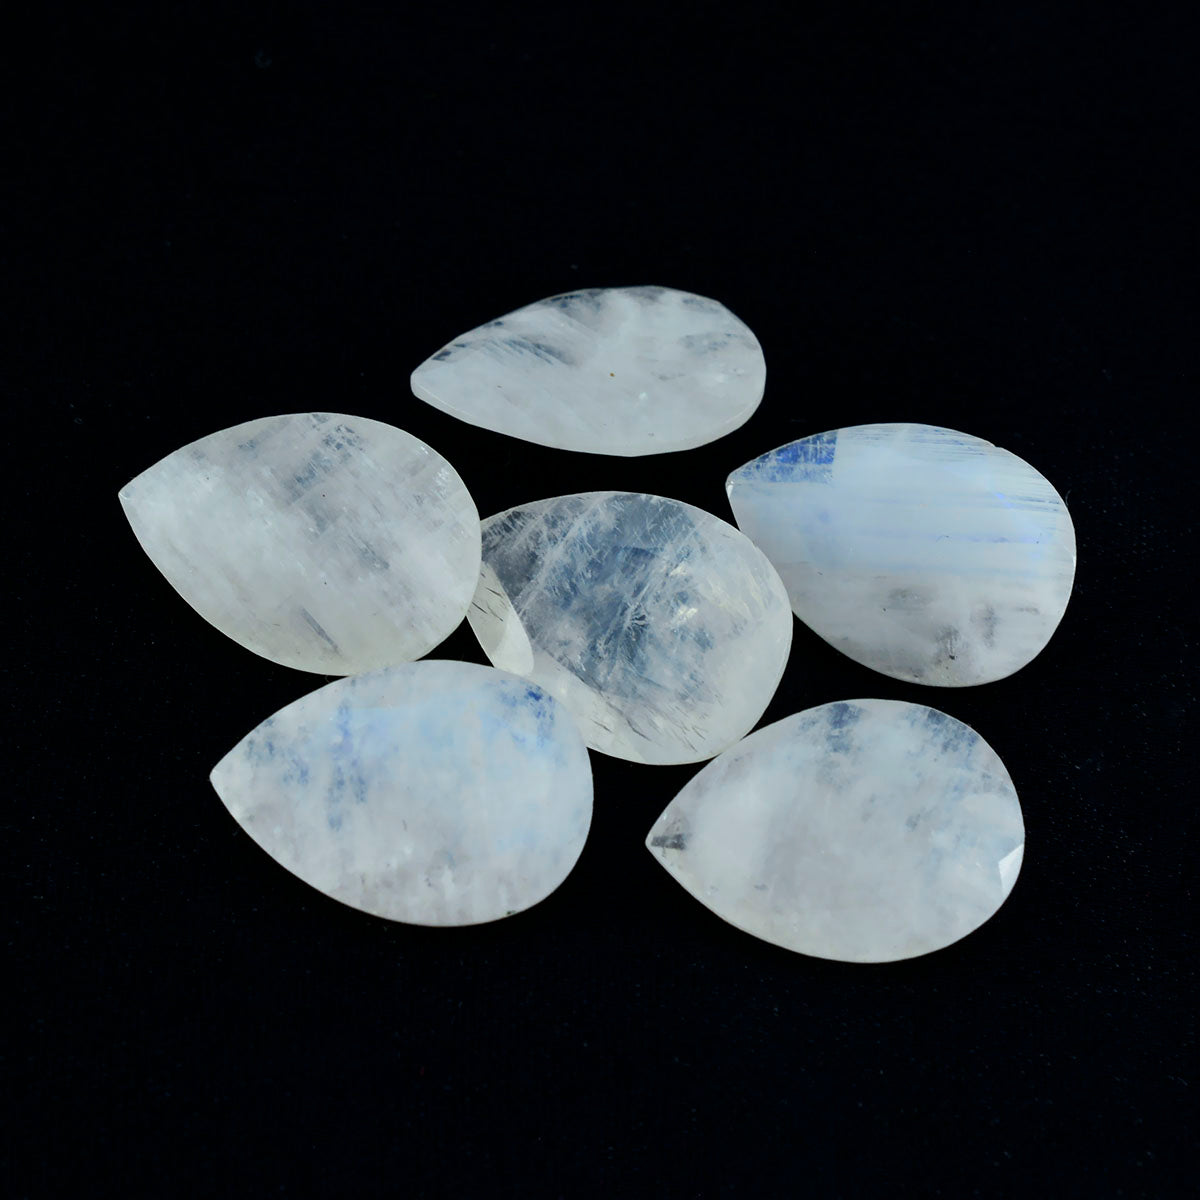 Riyogems 1 Stück weißer Regenbogen-Mondstein, facettiert, 12 x 16 mm, Birnenform, schöner hochwertiger loser Stein